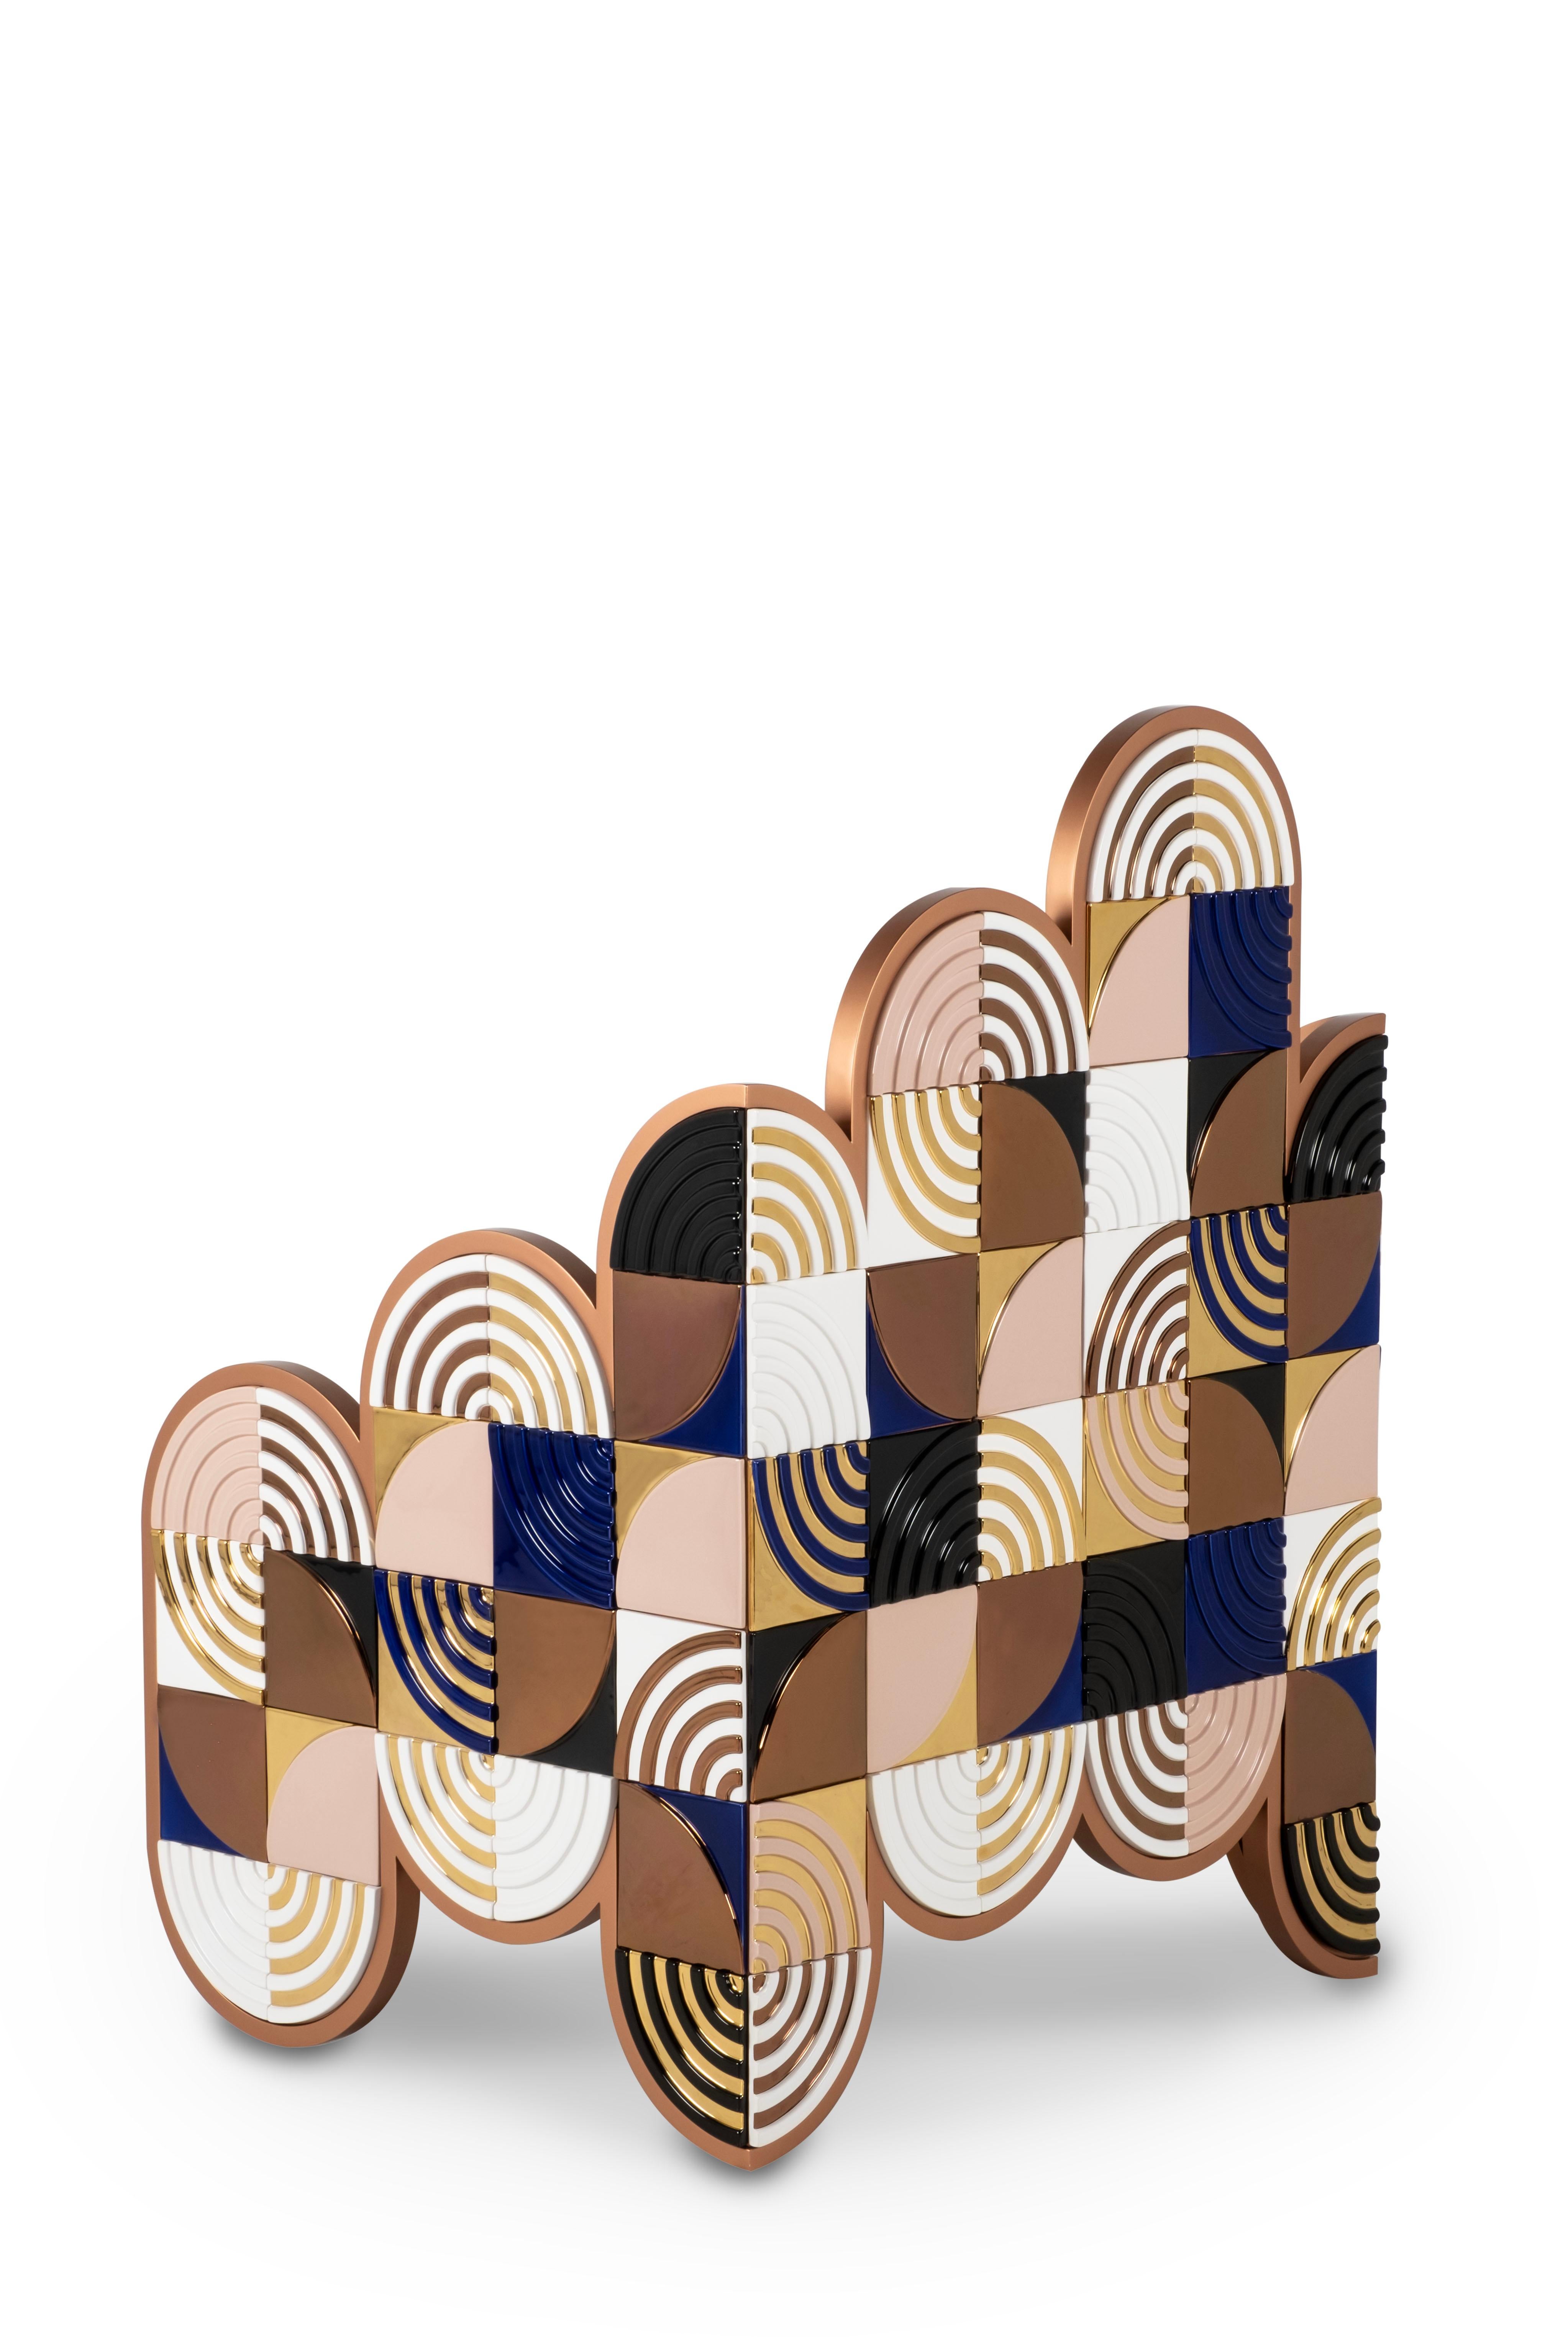 Sweet Dreams Sessel, Lusitanus Home Collection, handgefertigt in Portugal - Europa von Lusitanus Home.

Eine Greenapple x Byfly Kreation.

Vor mir sah mich ein Flügel von Menschen auf beiden Seiten mit einem liebevollen Lächeln an. In meinem